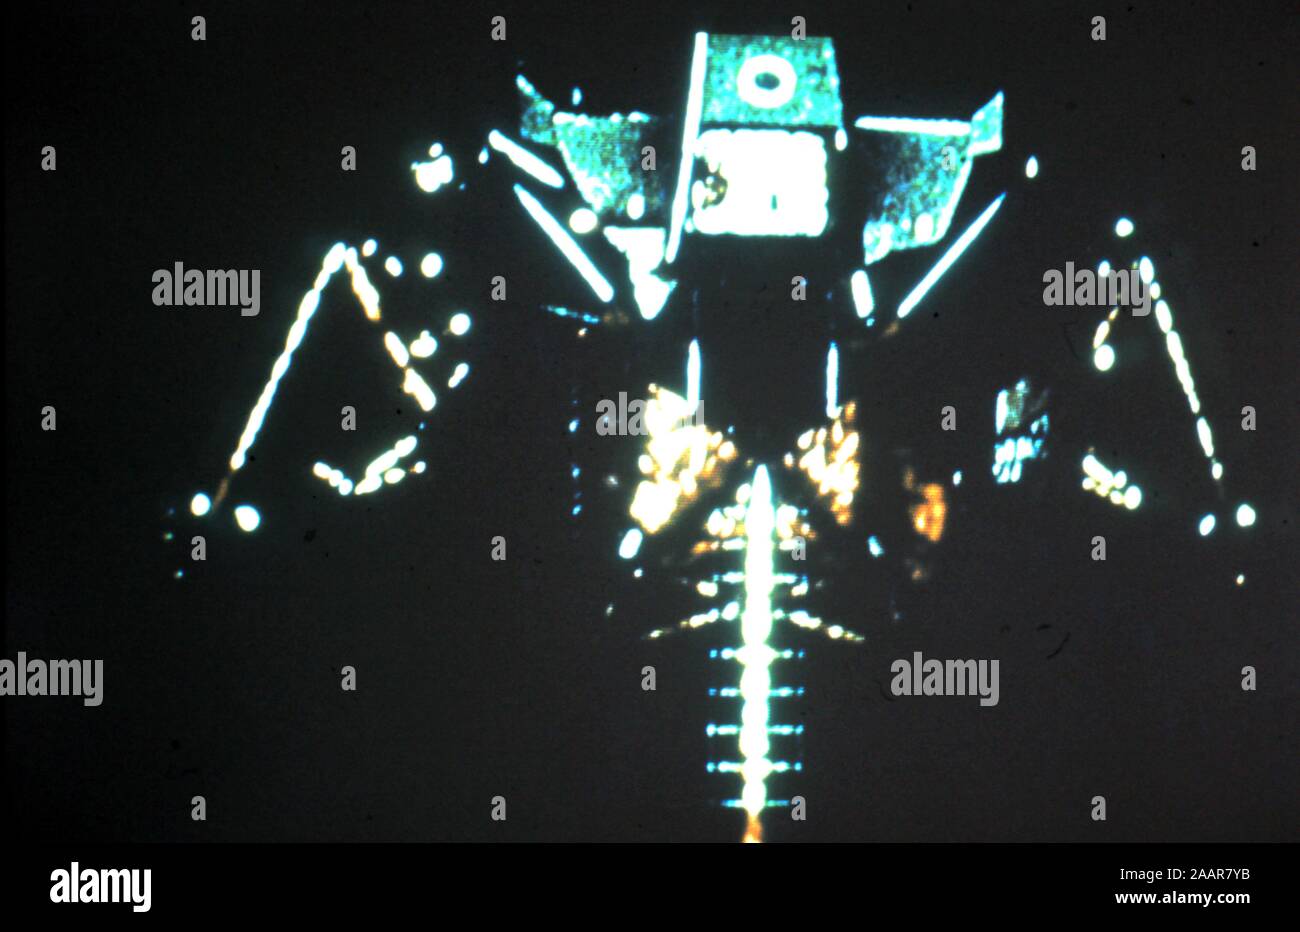 Teleclip Apollo 11 Lunar Module on Moon surface - photo taken directly from TV screen circa 1969-1972. Stock Photo